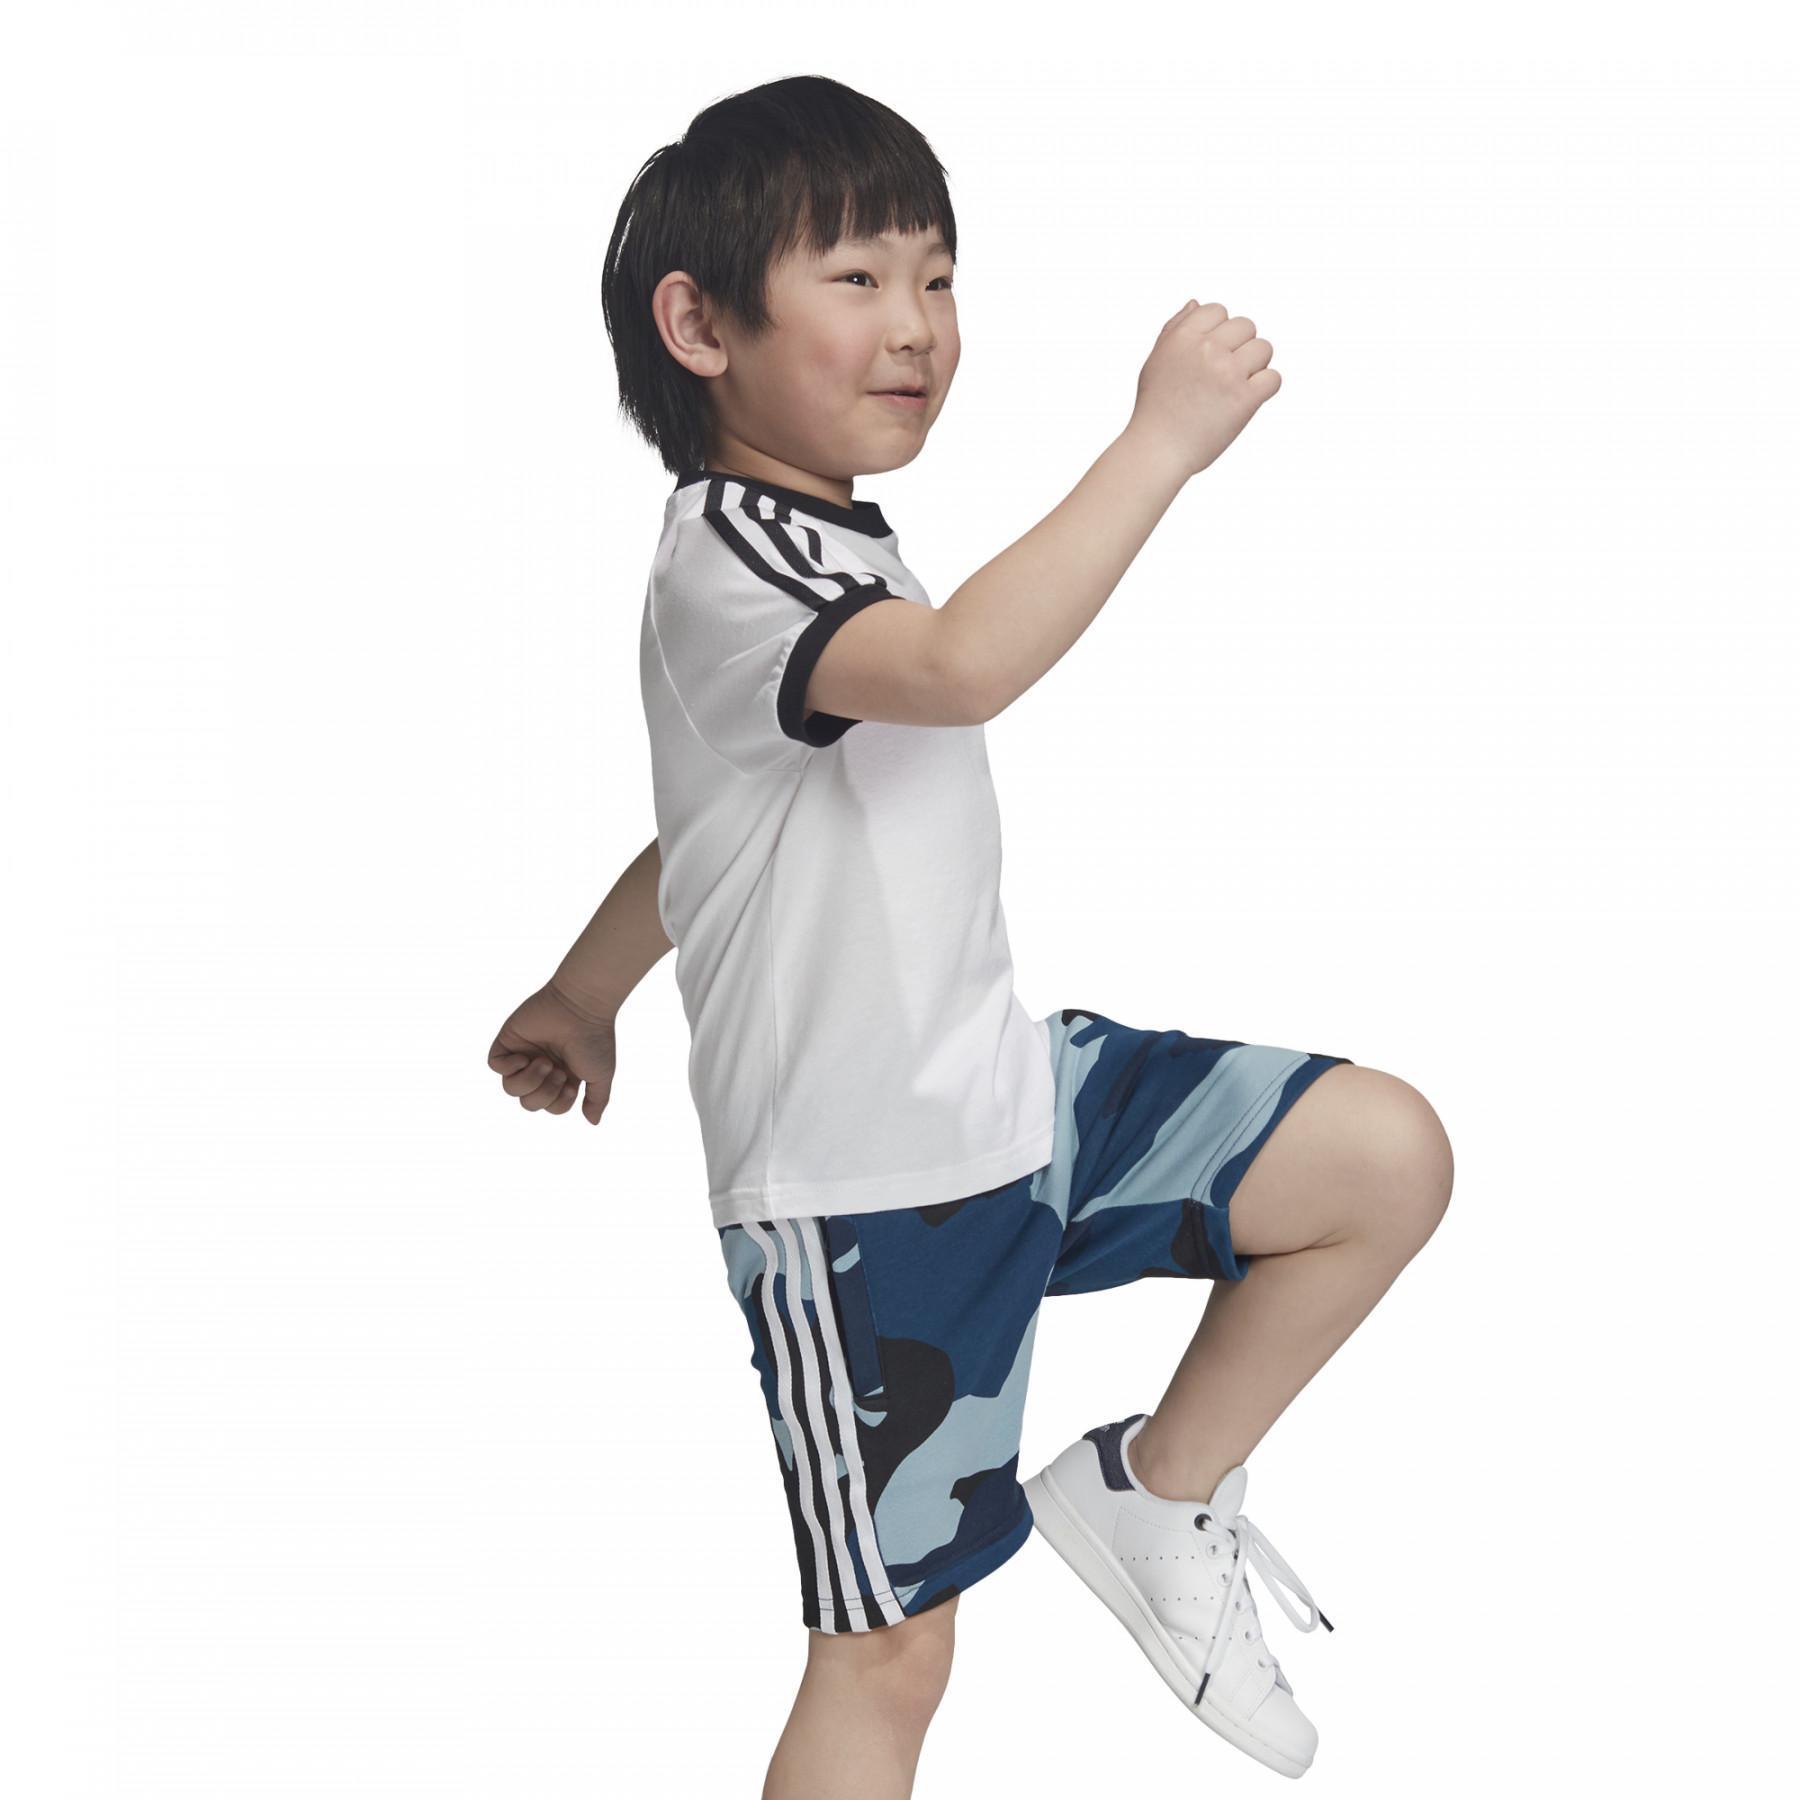 T-shirt kid adidas 3 Stripes